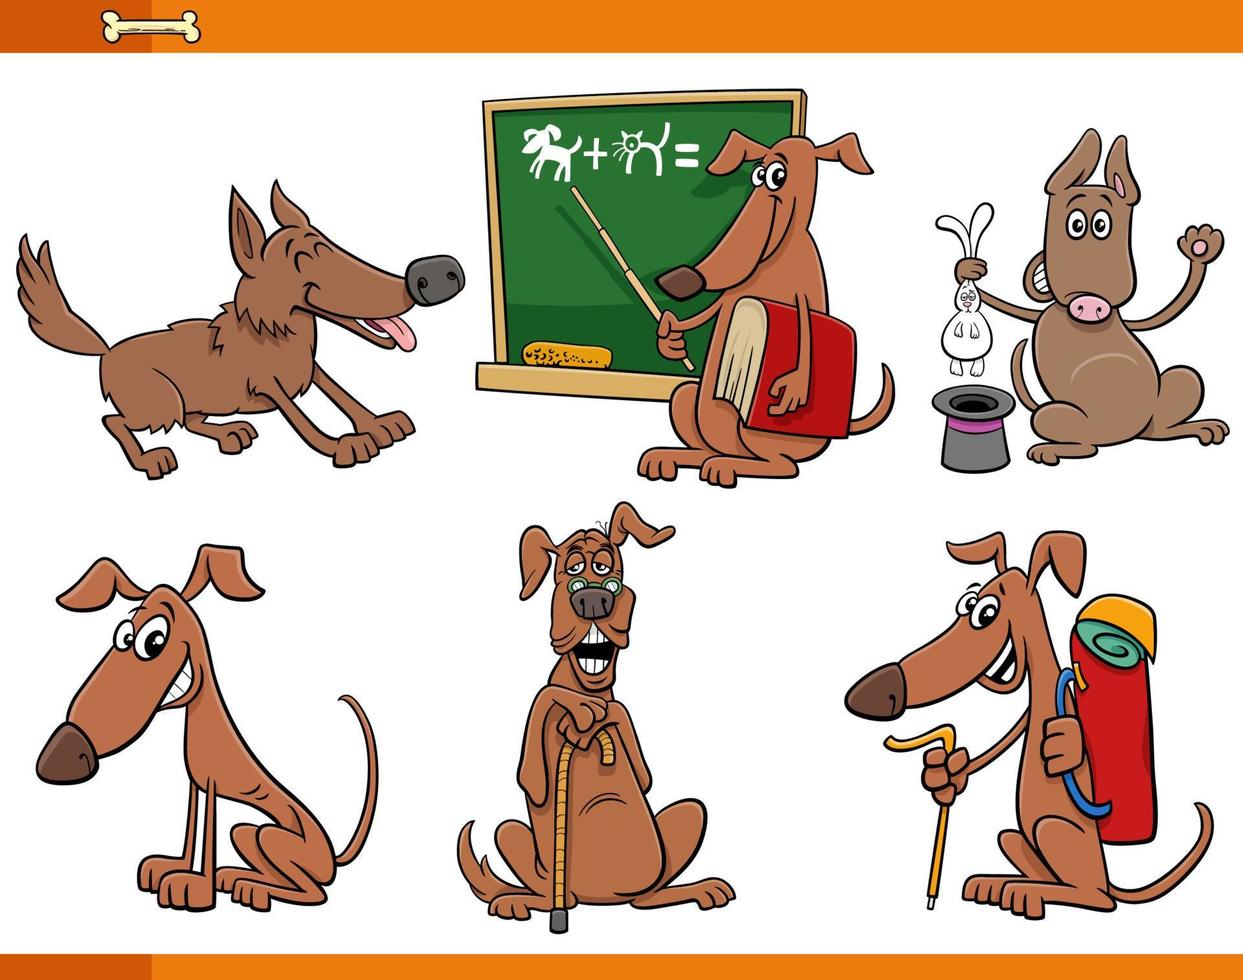 tecknade hundar och valpar djur roliga karaktärer set vektor